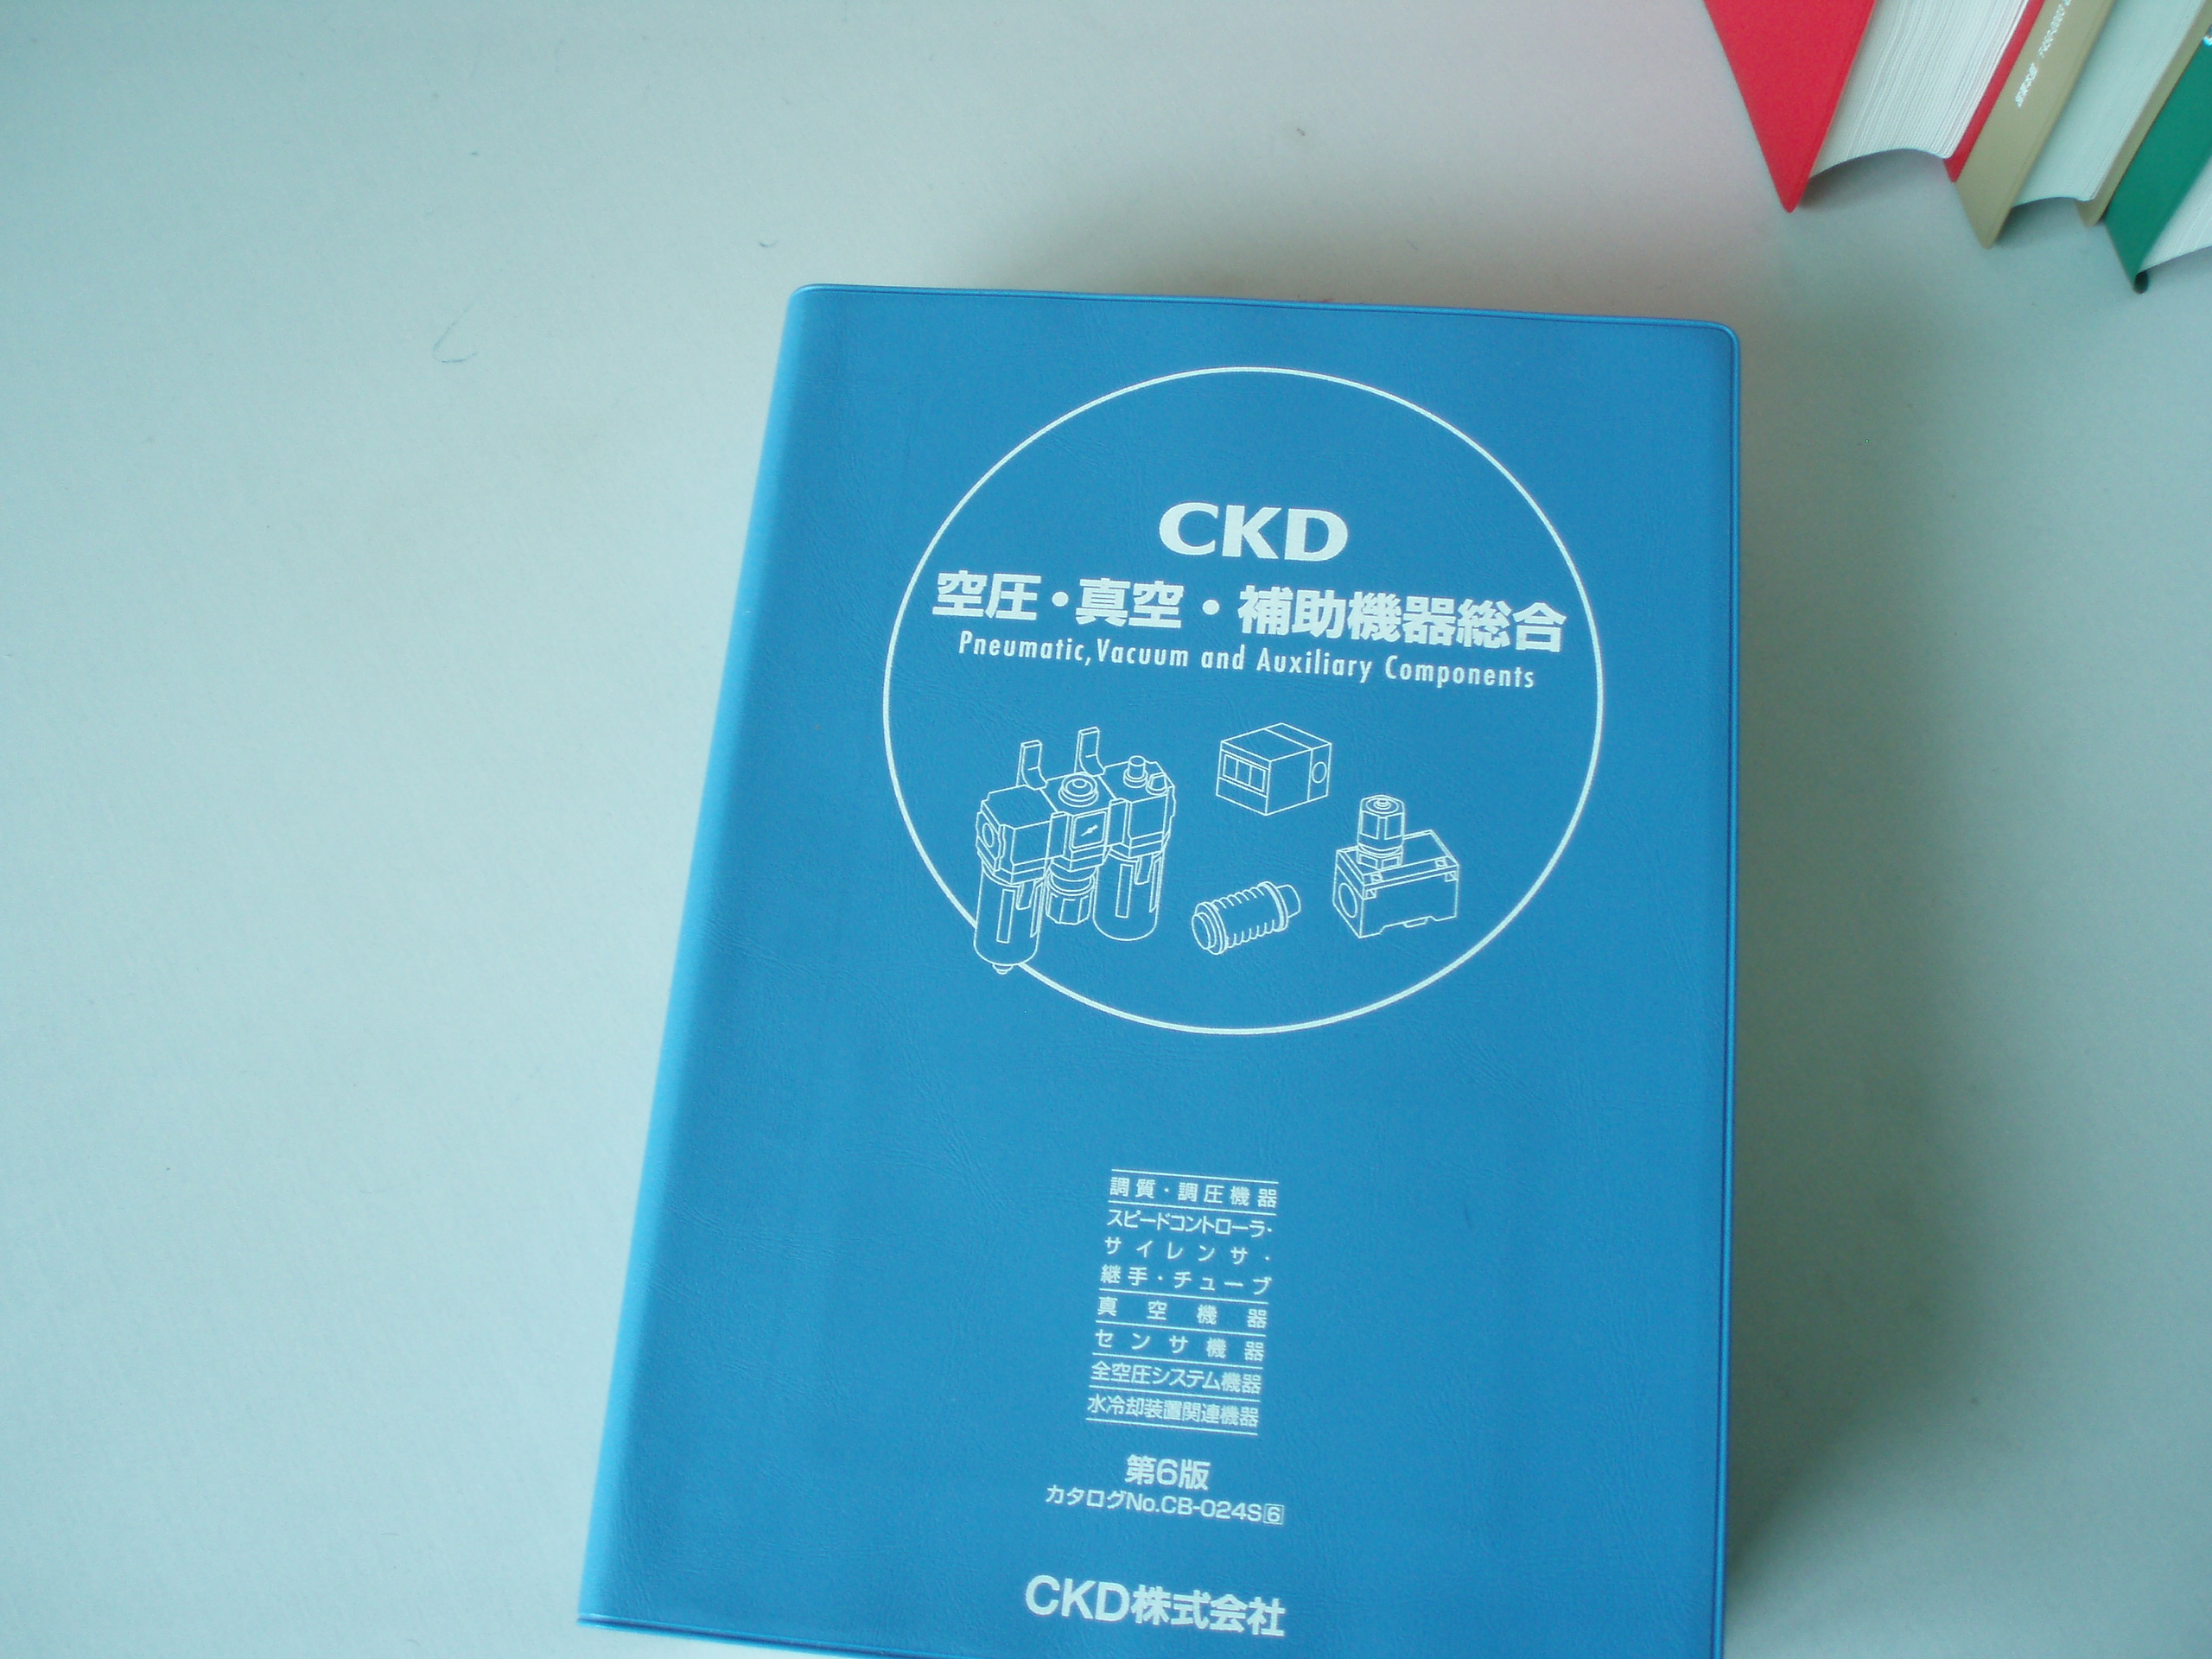 旺德富為CKD公司提供翻譯排版兼製作服務（六）